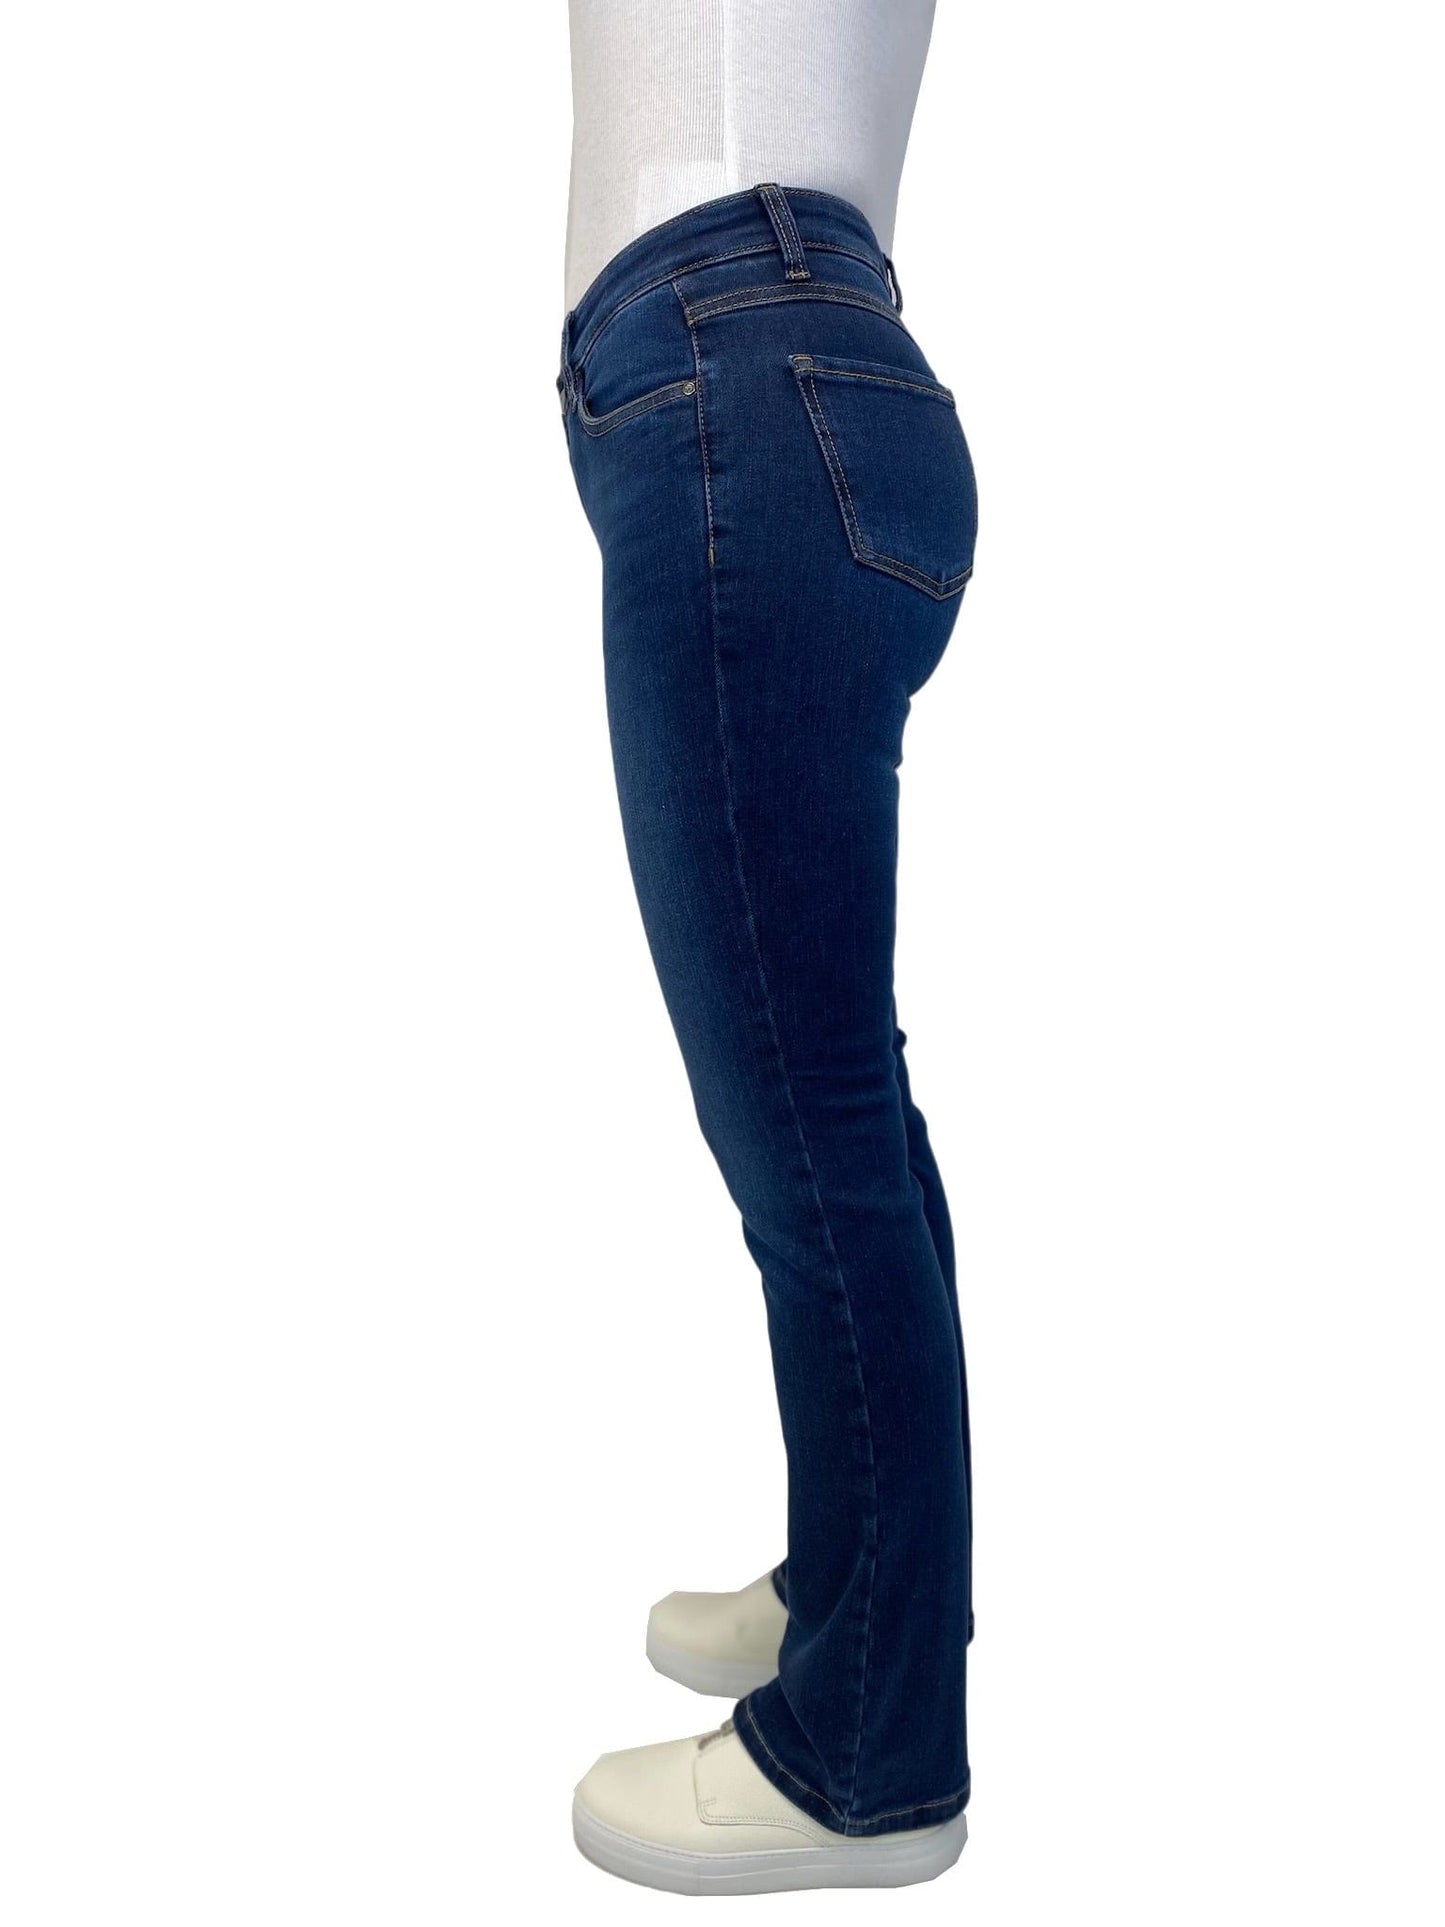 Sapatos Bukser Bootcut jeans short, Authentic blue